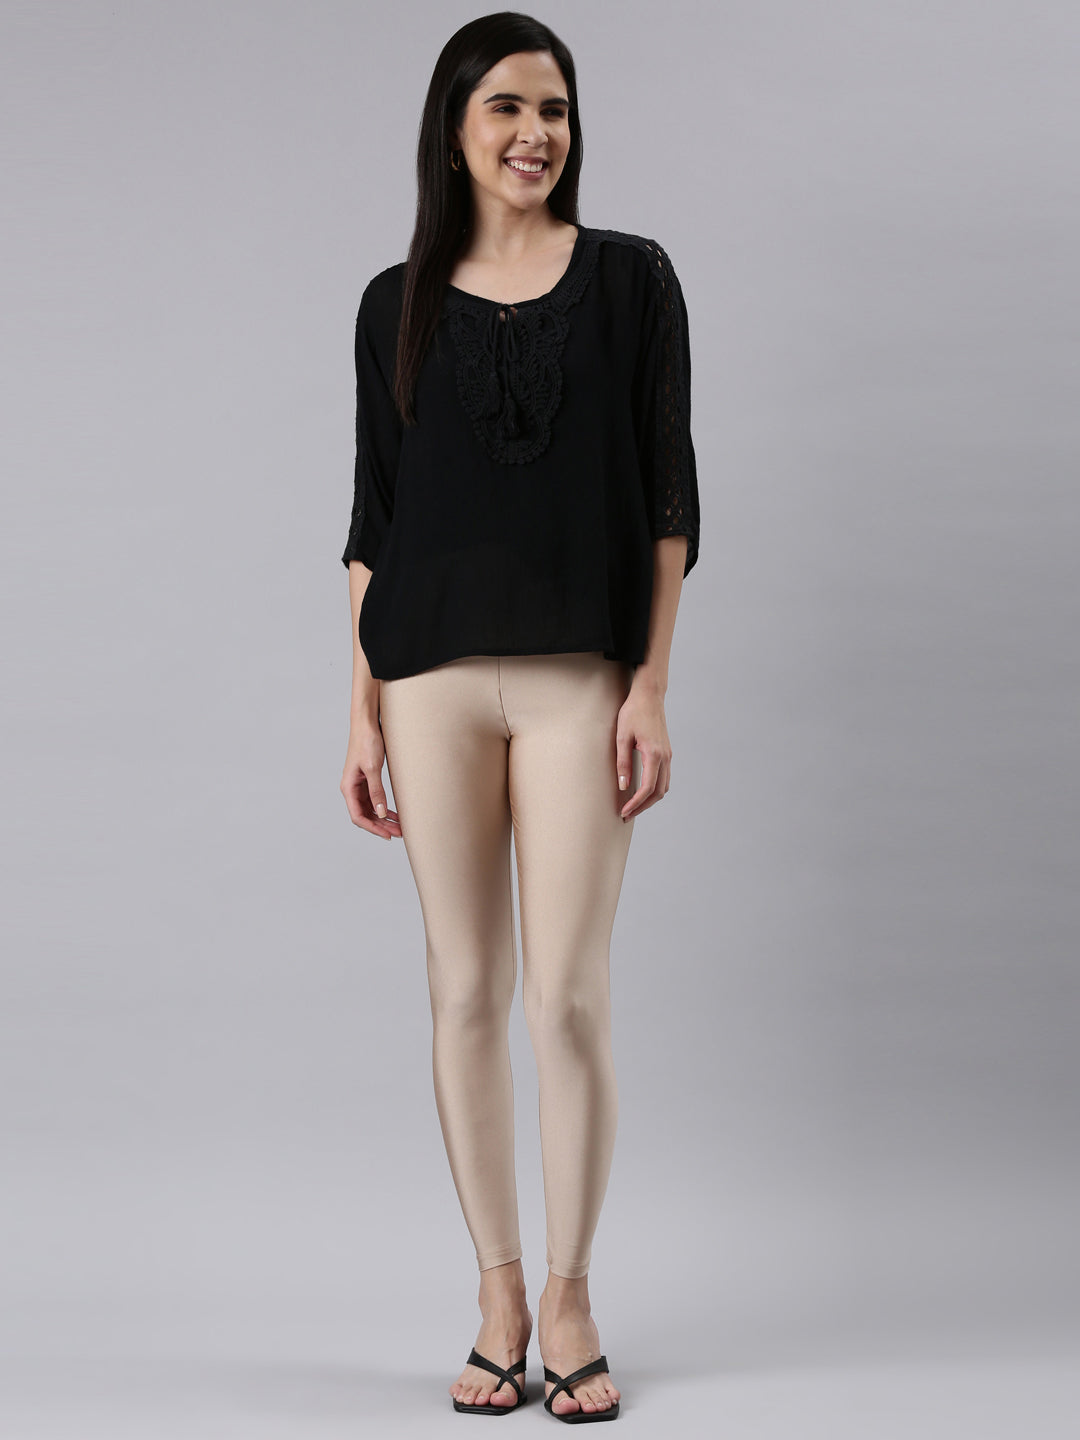 Buy Women Shimmer Lycra Leggings | Girls Leggings | Shimmer | Gold Color  Shimmer | 1 Pc (XL) at Amazon.in